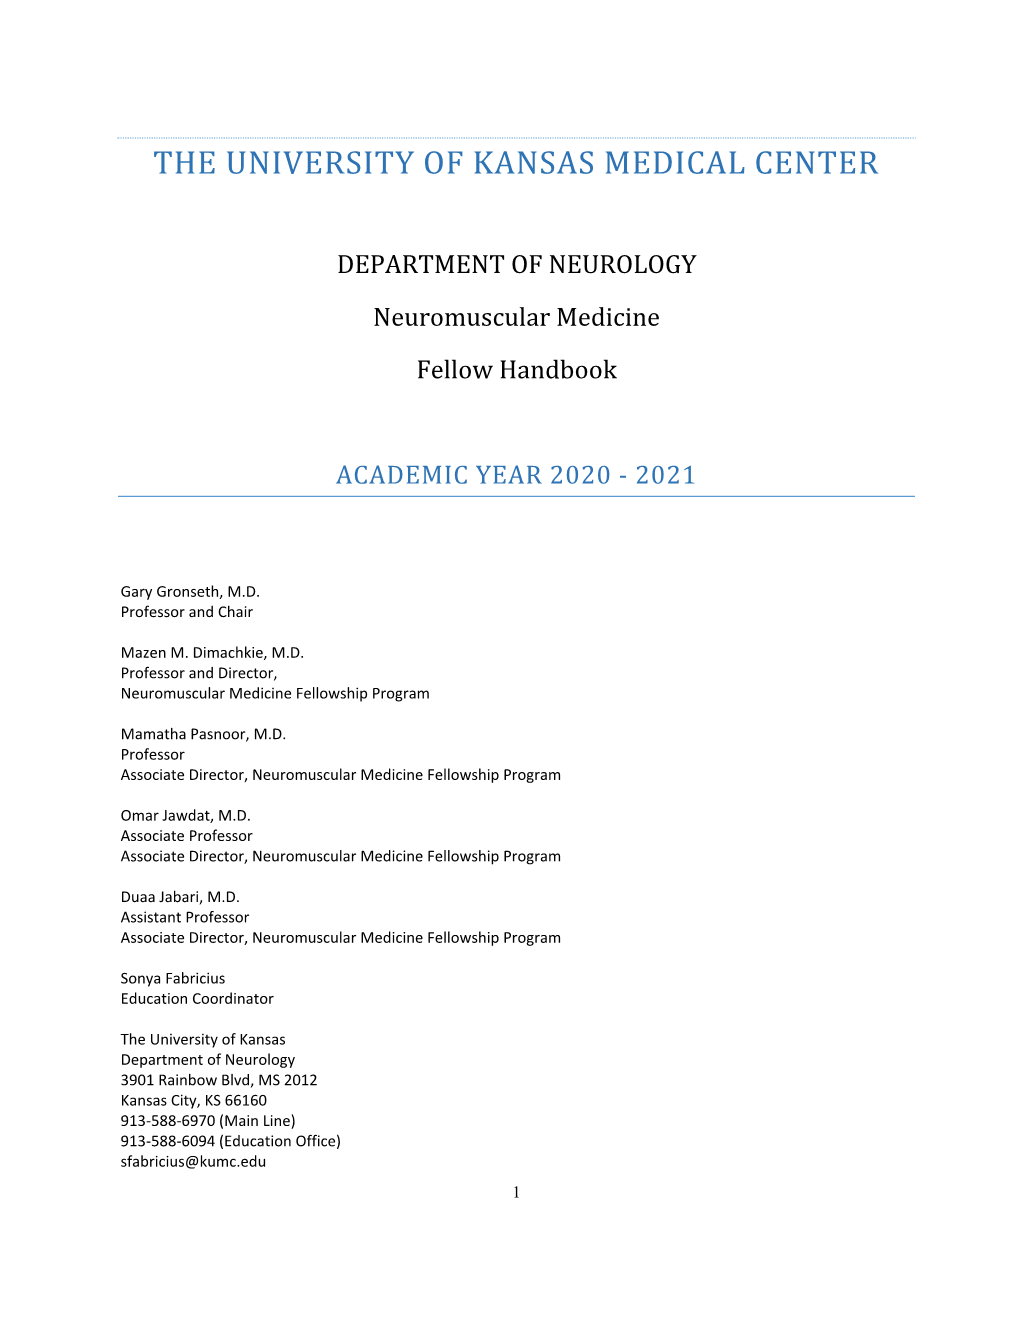 Neuromuscular Medicine Fellowship Handbook